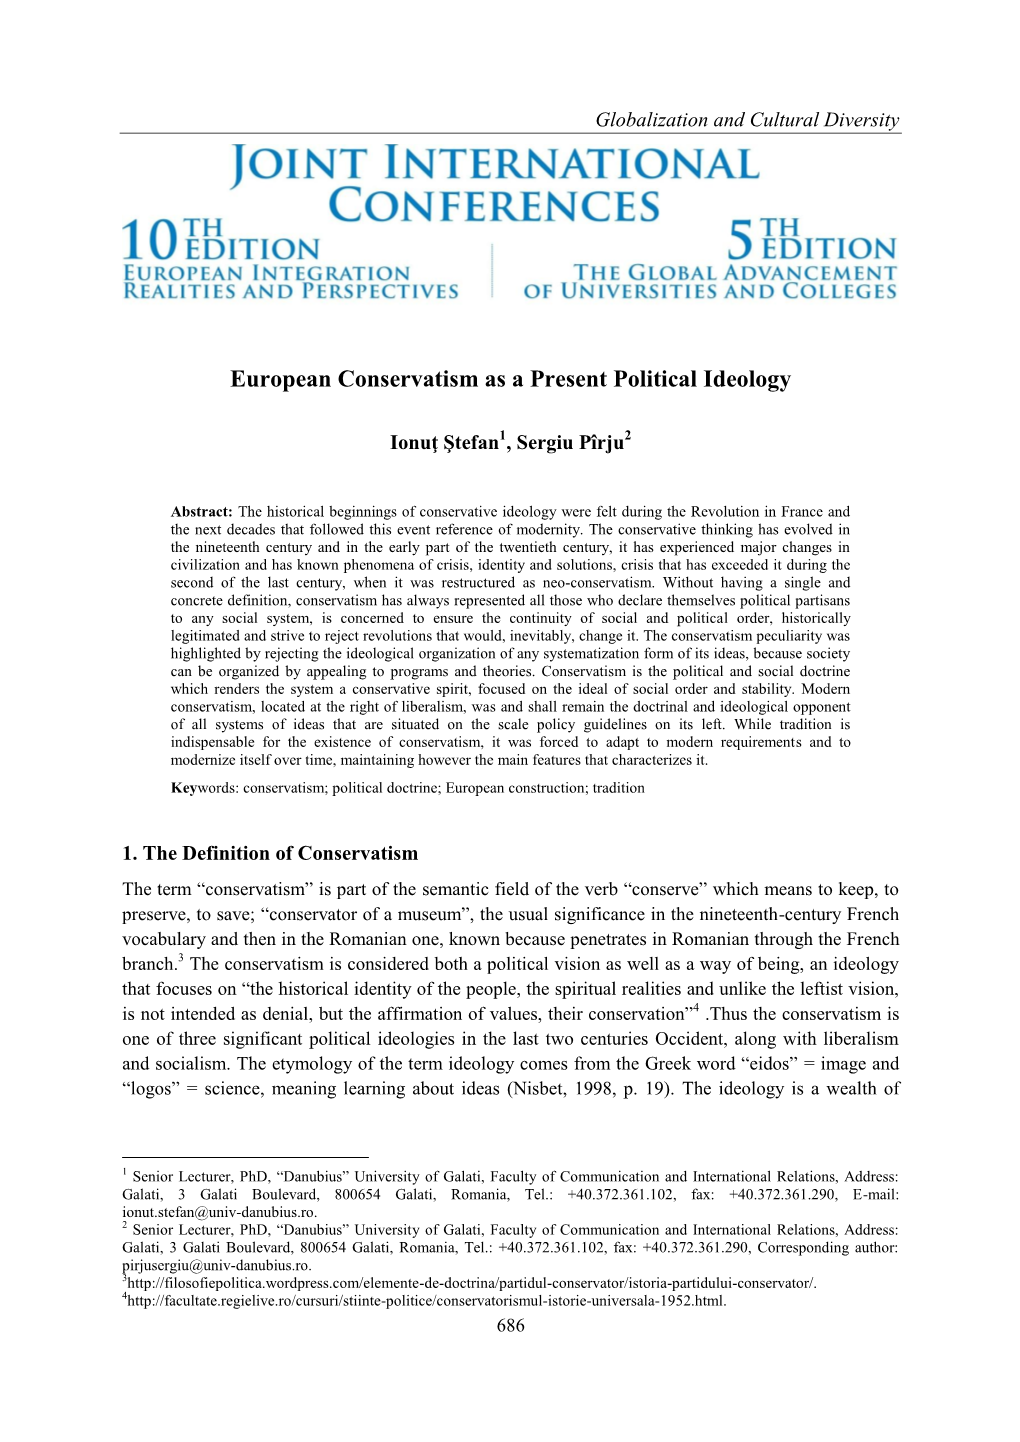 European Conservatism As a Present Political Ideology